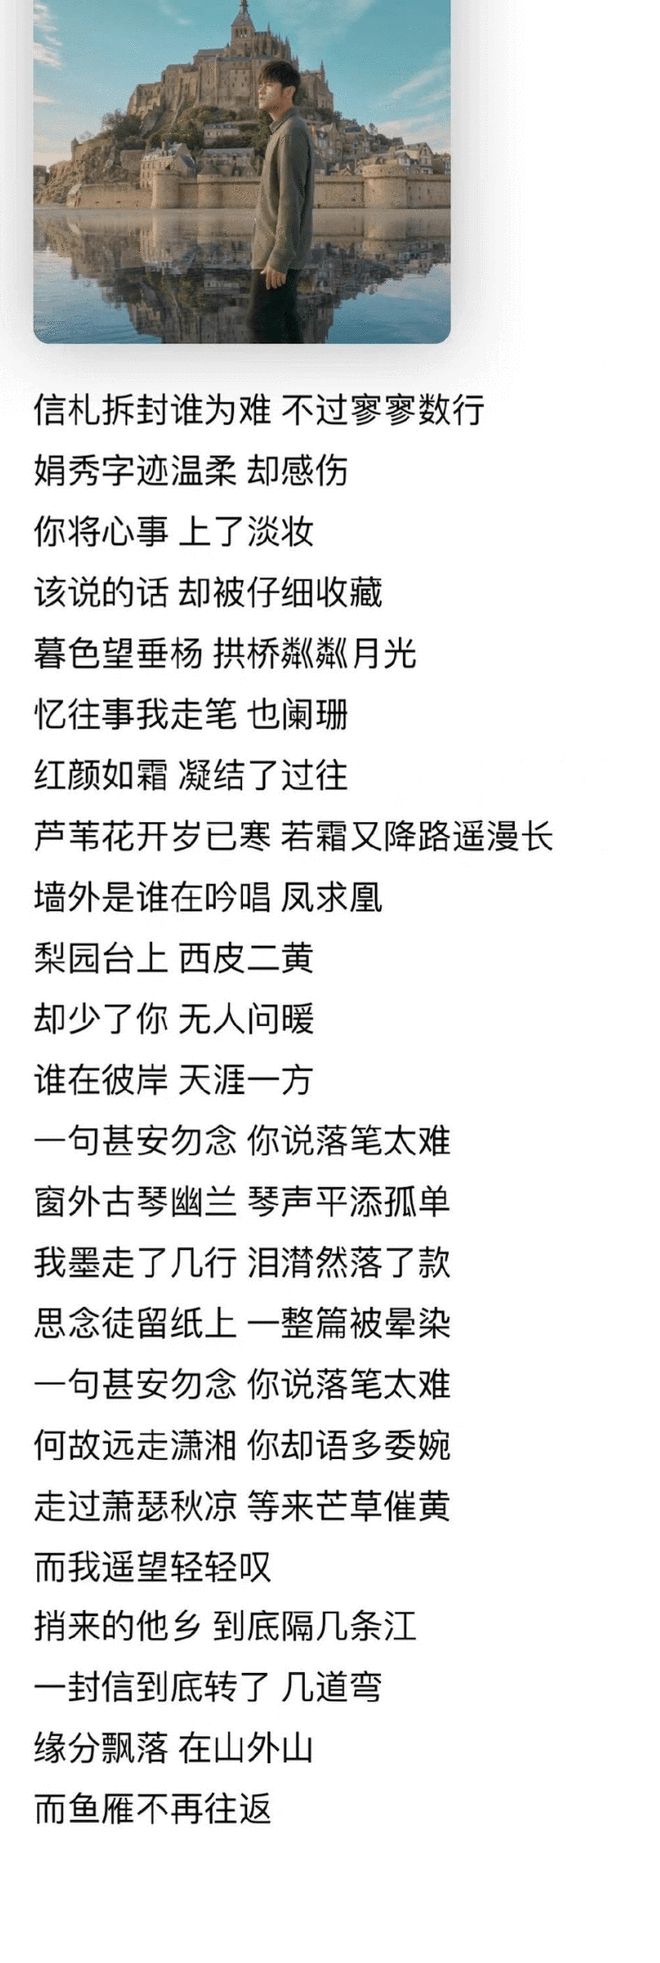 周杰伦新专辑提前上线引惊喜 中国风歌曲广受好评插图2